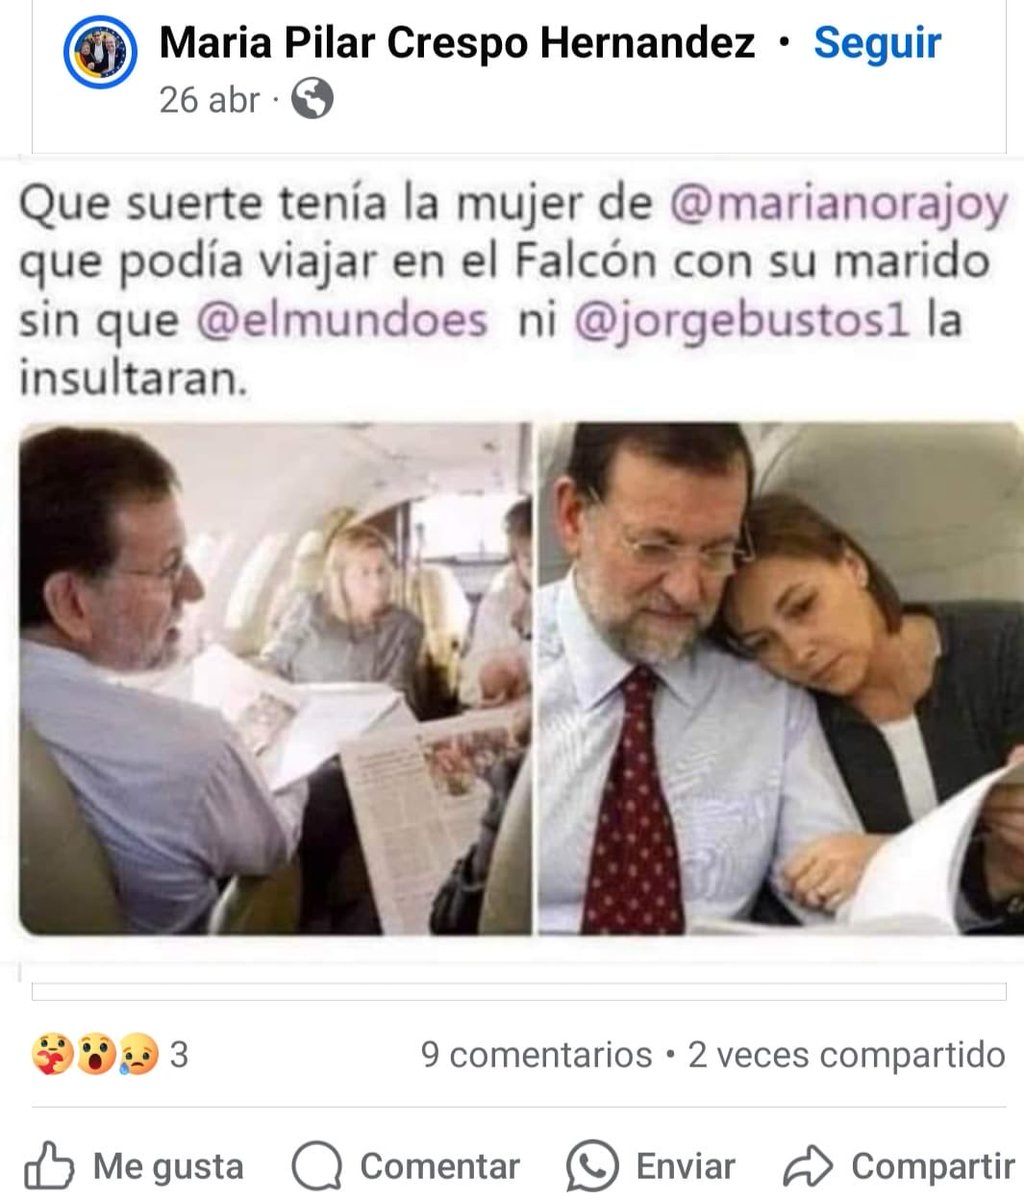 Que suerte tenía la mujer de@marianorajoy que podía viajar en el Falcón con su marido sin que @elmundoes ni @jorgebustos1 la insultaran.